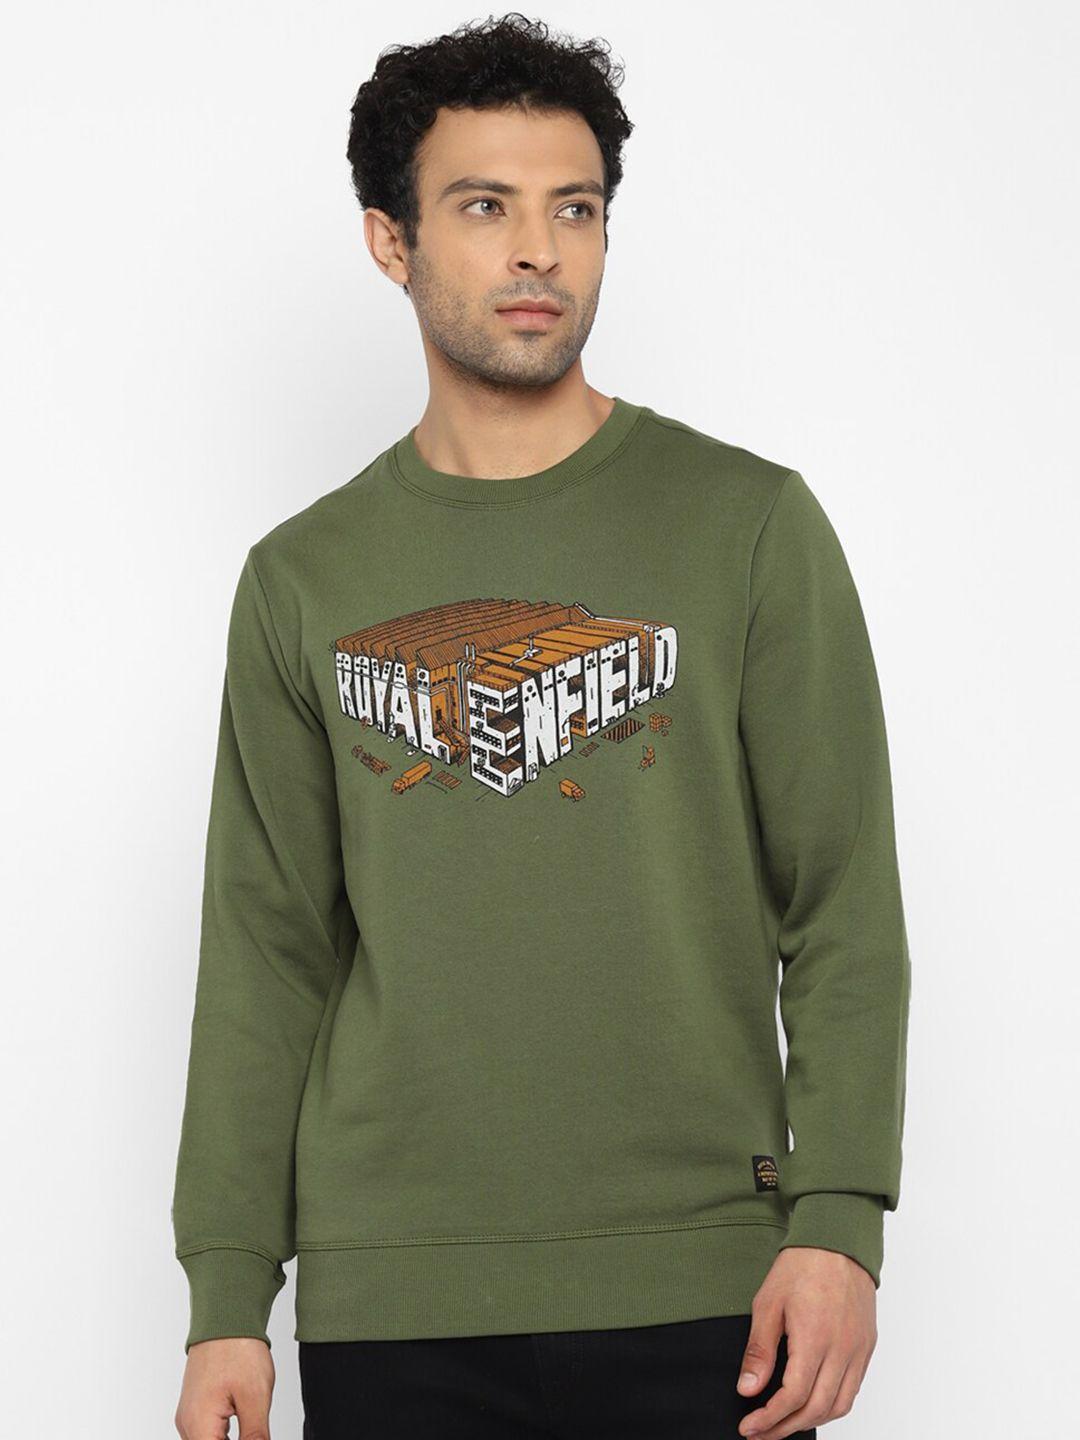 royal-enfield-men-olive-green-printed-sweatshirt